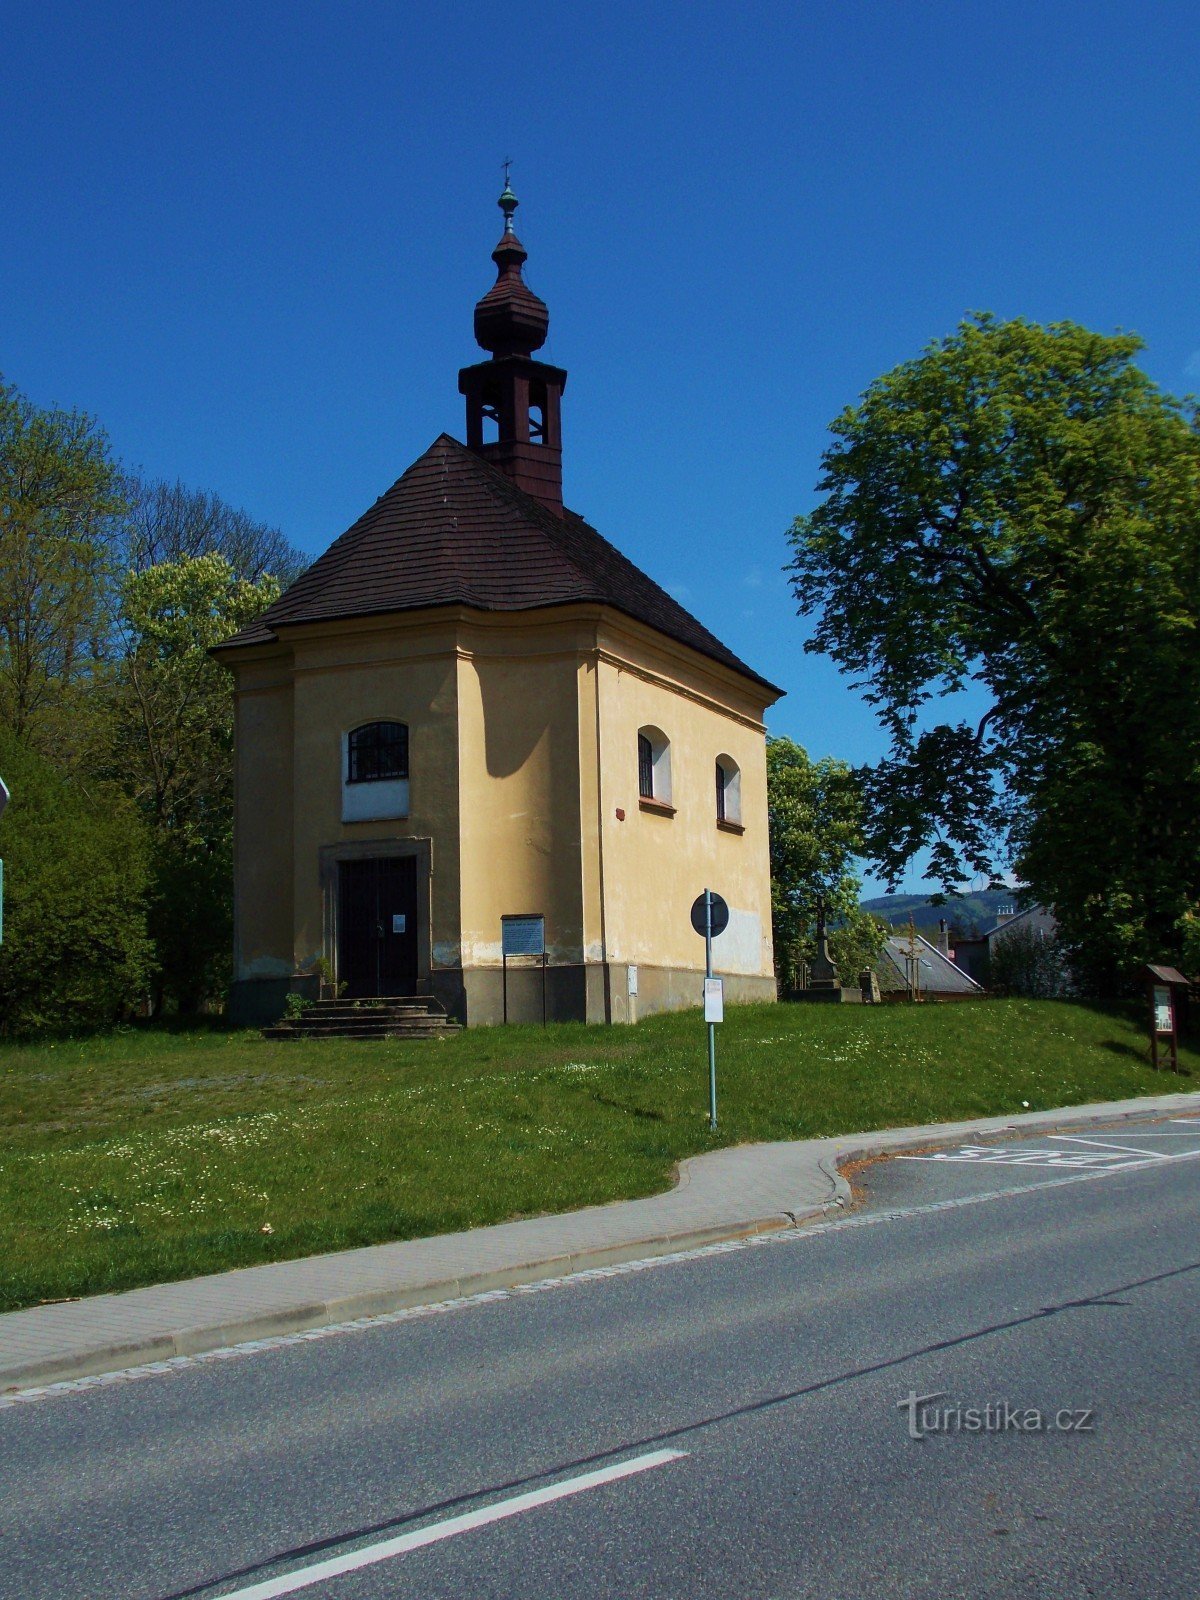 Rund um die St.-Laurentius-Kapelle in Bystřice pod Hostýnem